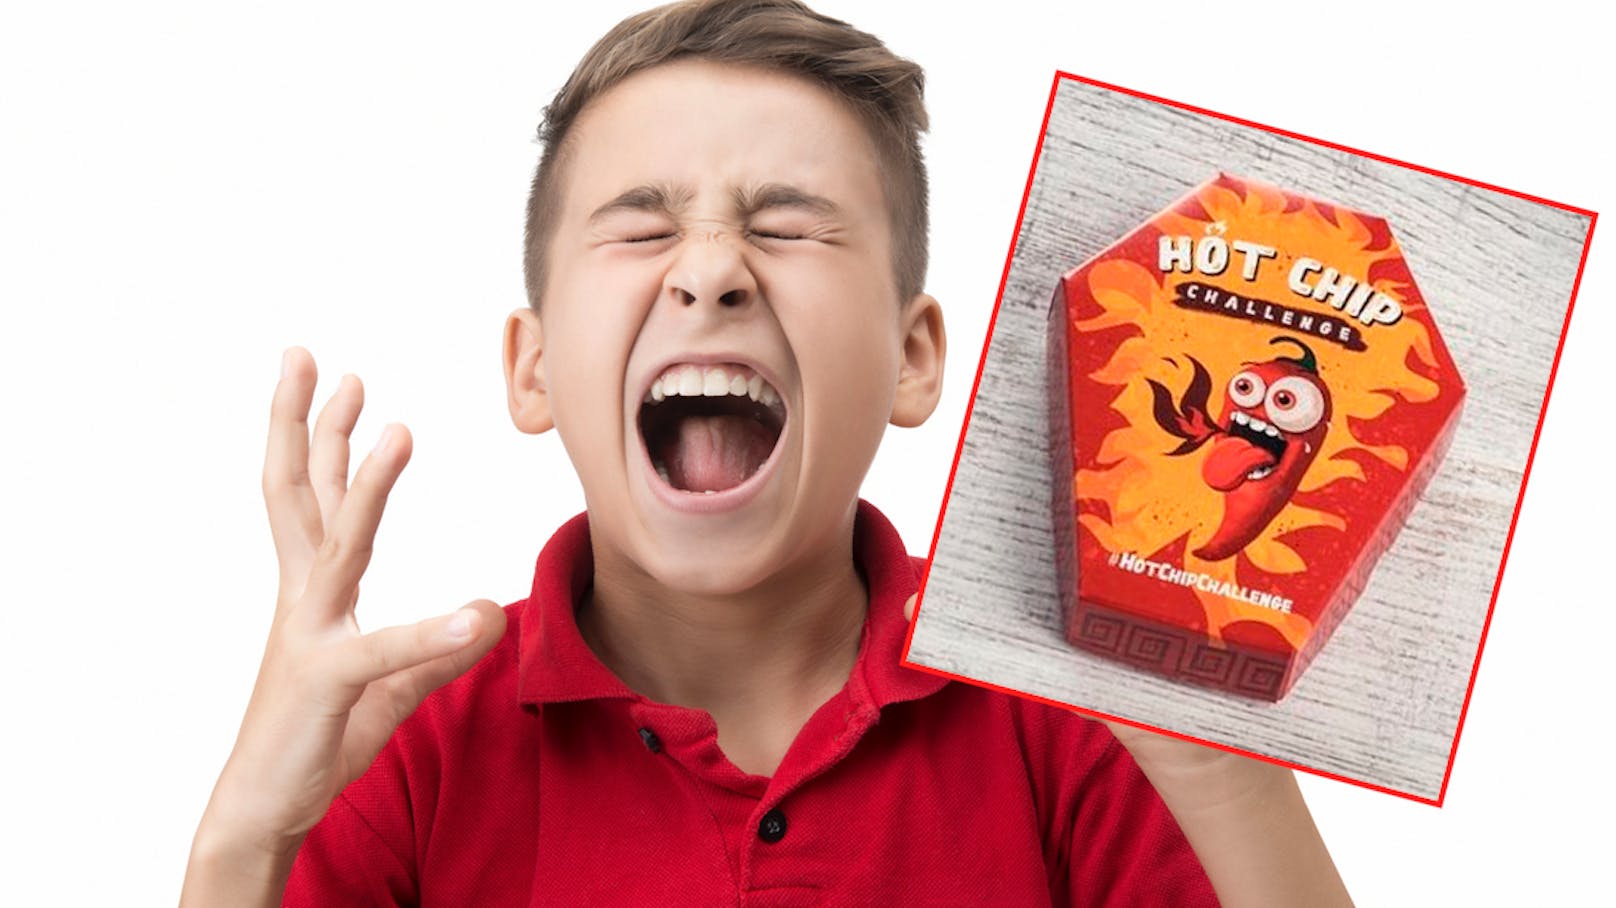 Gefährlich! "Hot Chip Challenge" in Österreich verboten